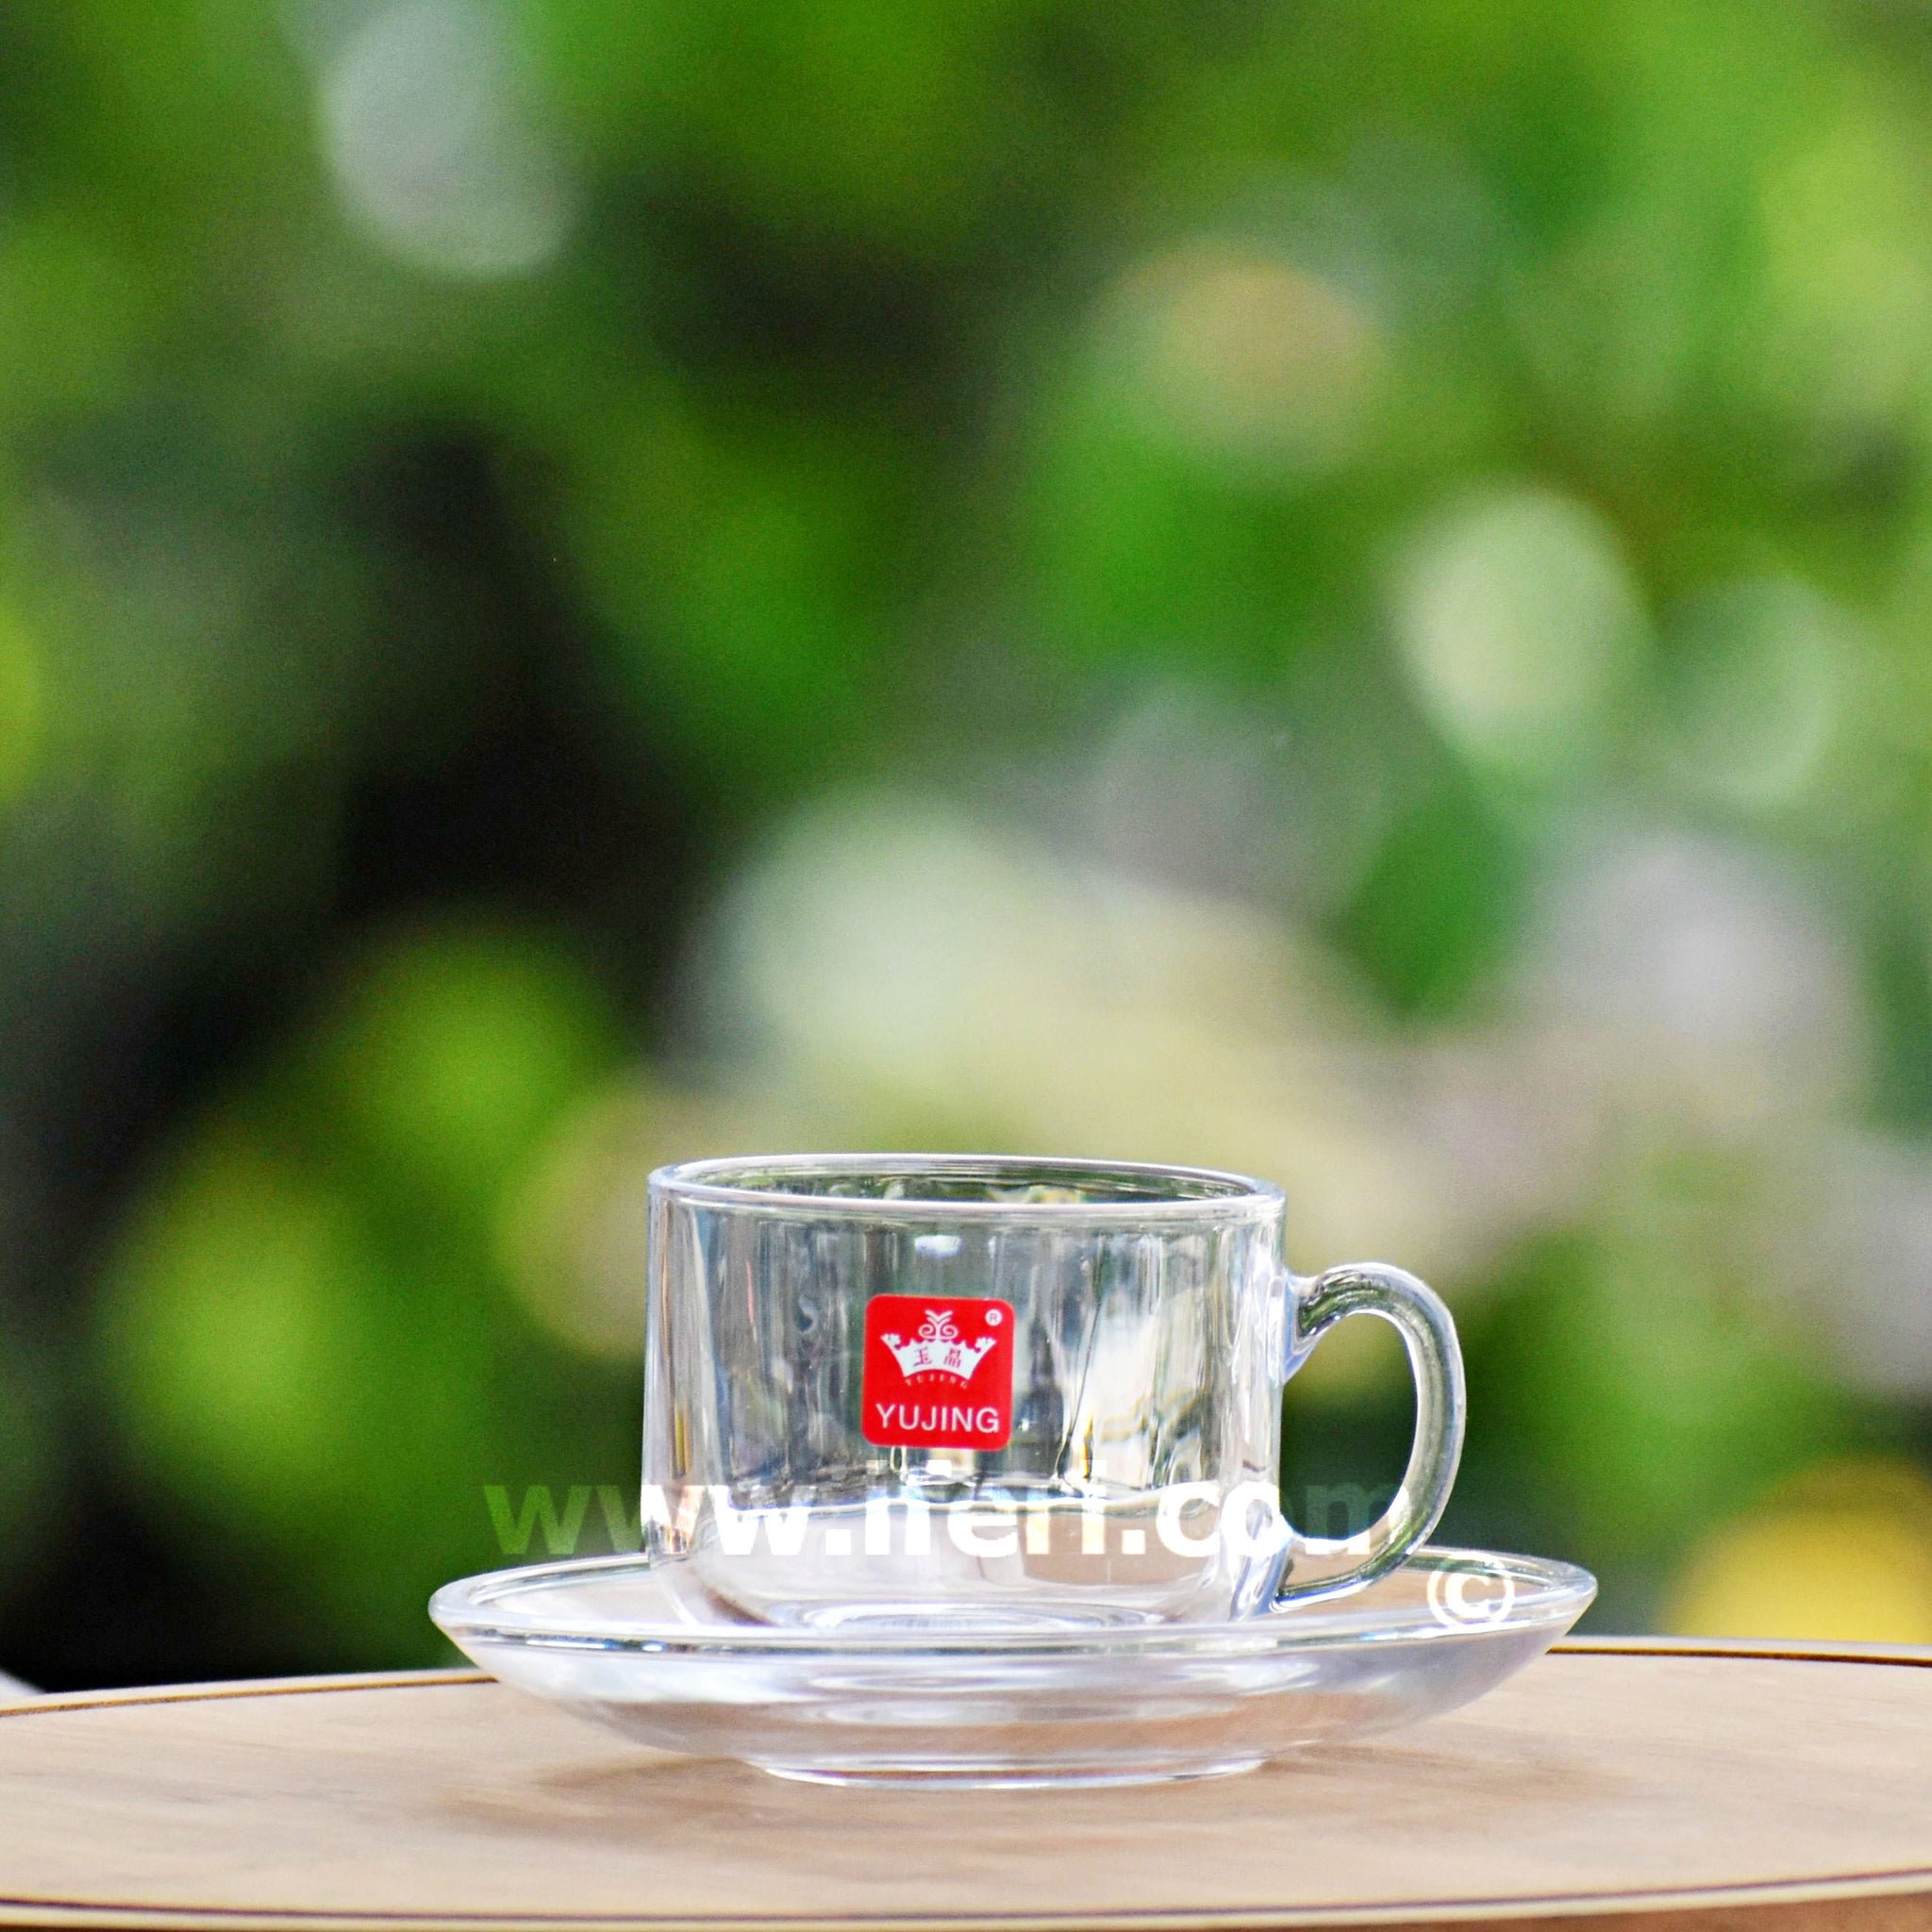 12 Pcs Glass Tea Cup Set with Saucer RH2078